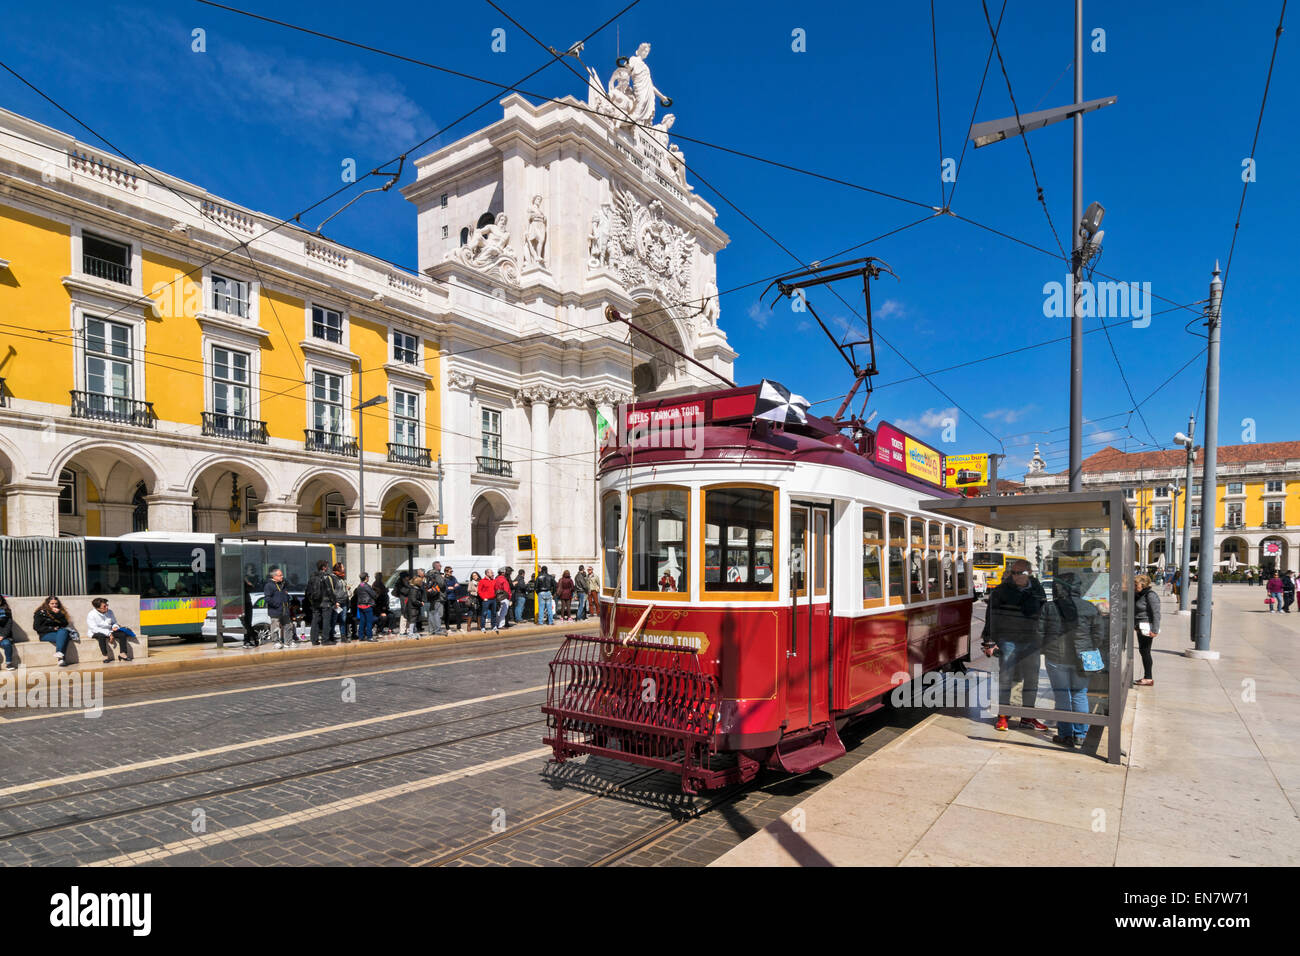 Lisbona PORTUGALTHE Praca do Comercio quadrato con ARCATA DI ARCO DA Rua Augusta e tram rosso Foto Stock